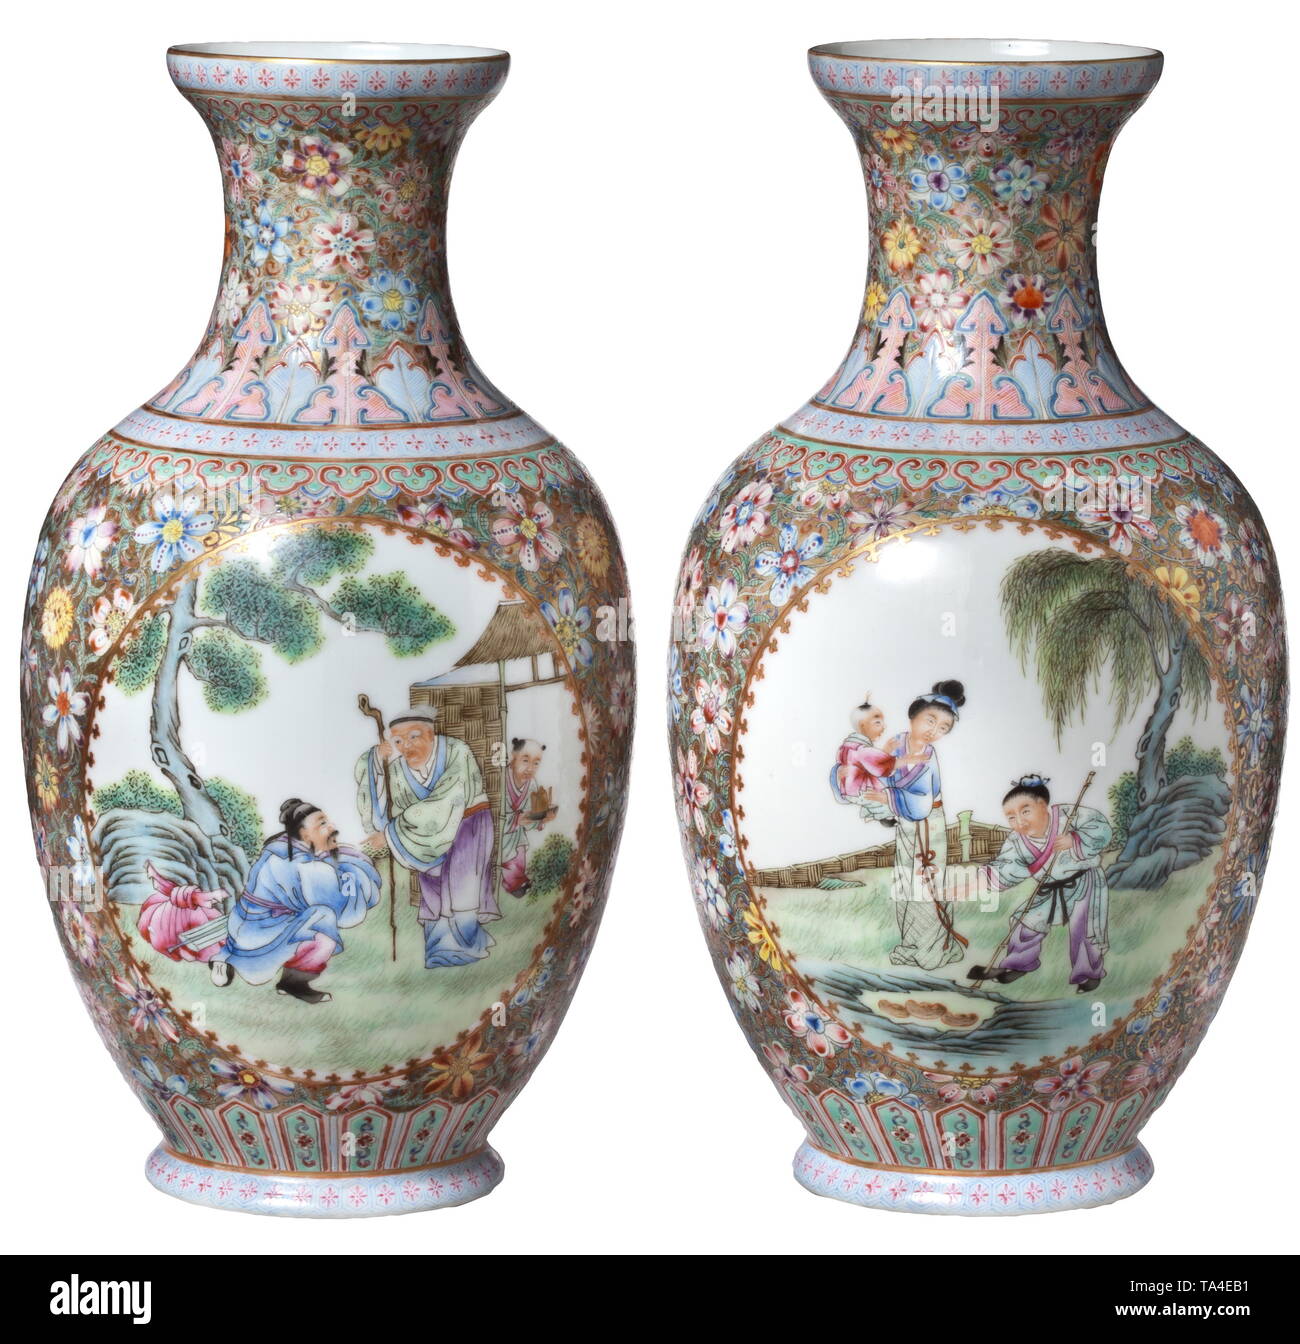 Une Paire de vases de porcelaine chinoise de la coquille, marque Qianlong 19ème siècle probablement, vases à bulbe avec cou concave fait de fin, translucide, blanc porcelaine. Multi-couleur et en partie de l'ornementation dorés à la façon de "famille rose' sur toute la surface. Des deux côtés, l'appariement d'images miroir ovale, cartouches représentant des scènes de genre avec plusieurs figures, entourée de riches décorations florales. Sur chaque base, le repère bleu de la période Qianlong (1736-95). Hauteur de chaque vase 21,5 cm., historique, historique de la Chine, le chinois, le 19ème siècle, Additional-Rights Clearance-Info-Not-Available- Banque D'Images